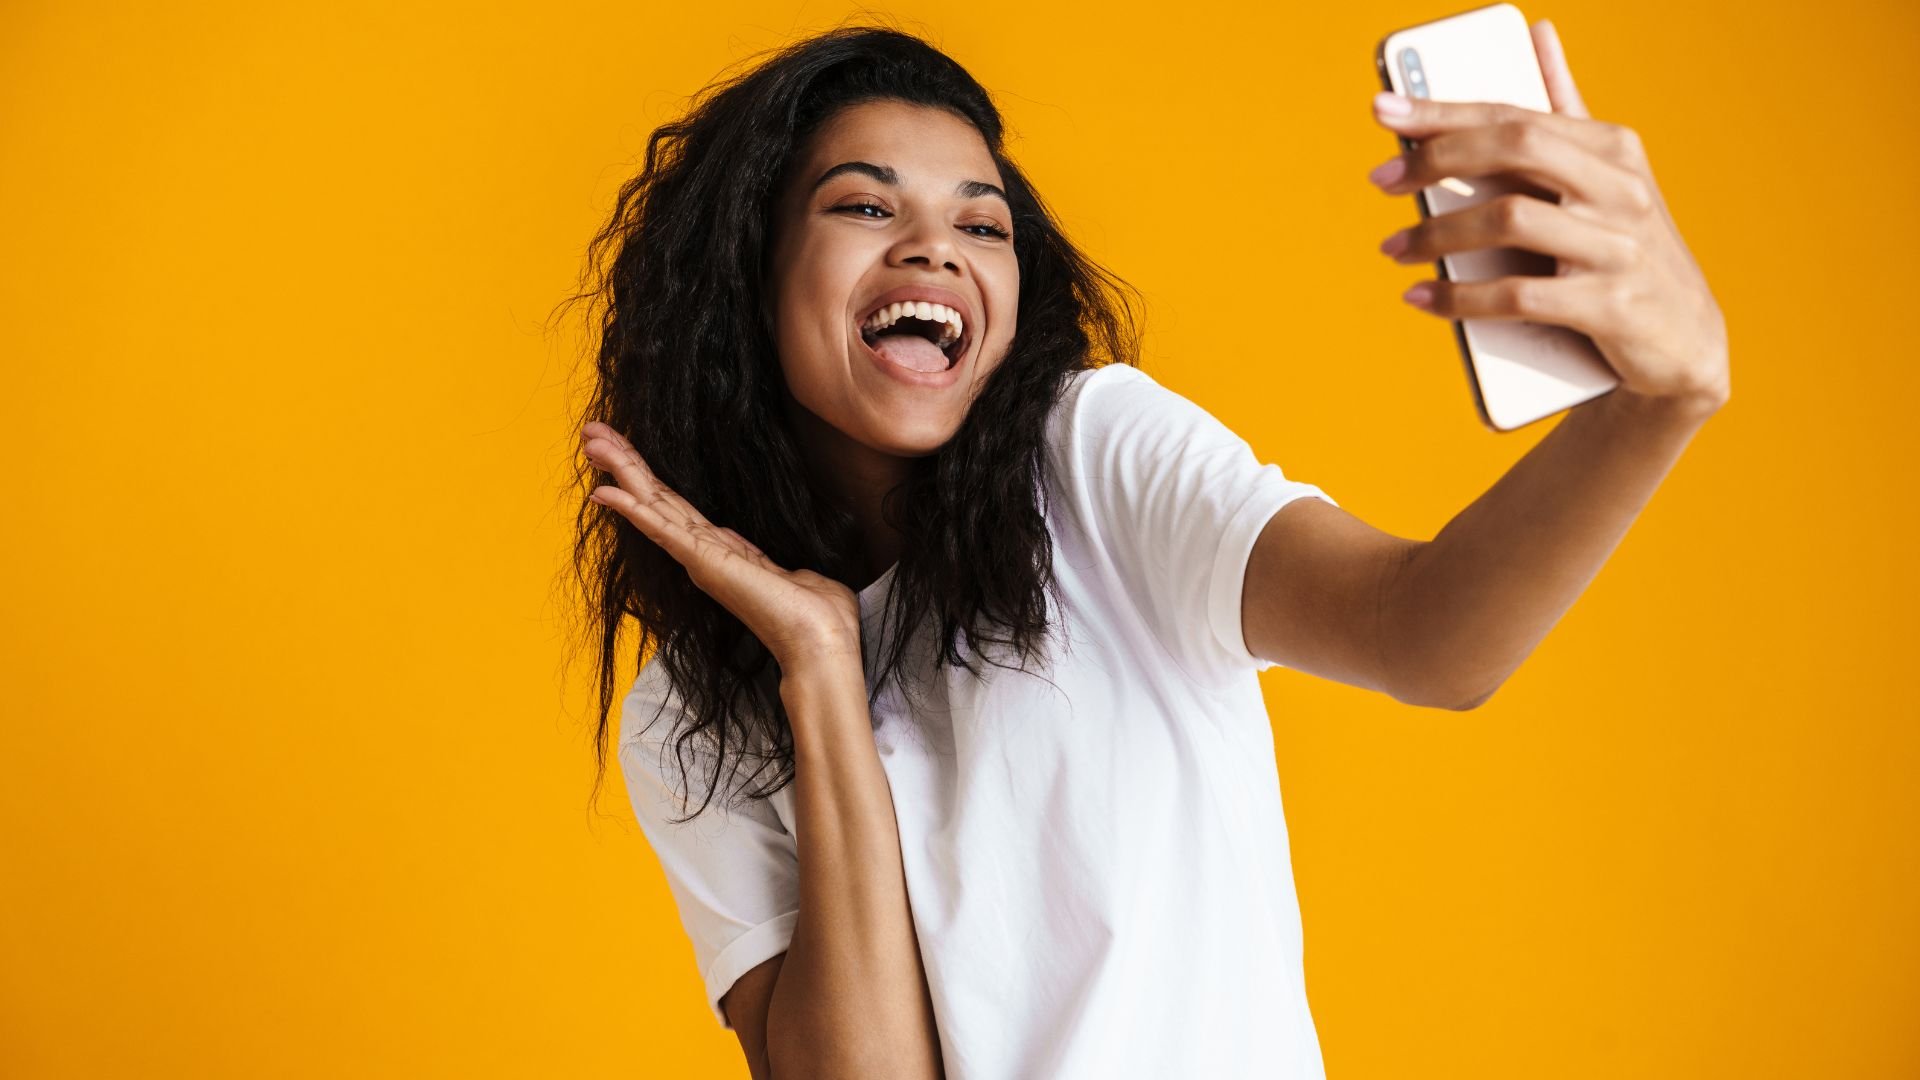 Imagem de uma mulher sorrindo e capturando uma foto selfie com o celular em um fundo amarelo